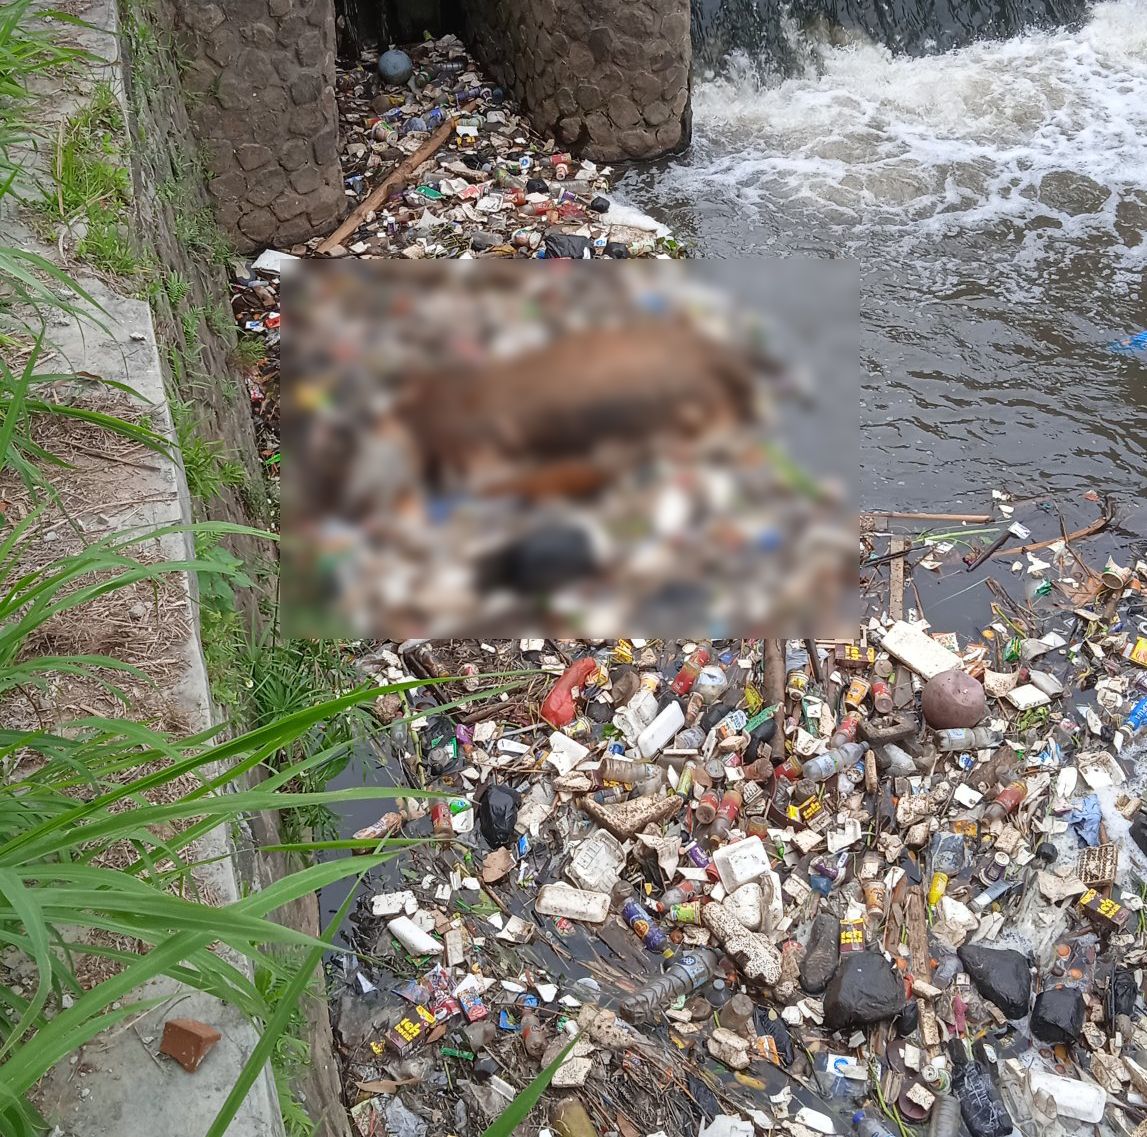 Bangkai sapi tersangkut di aliran sungai penuh sampah di Bandung.